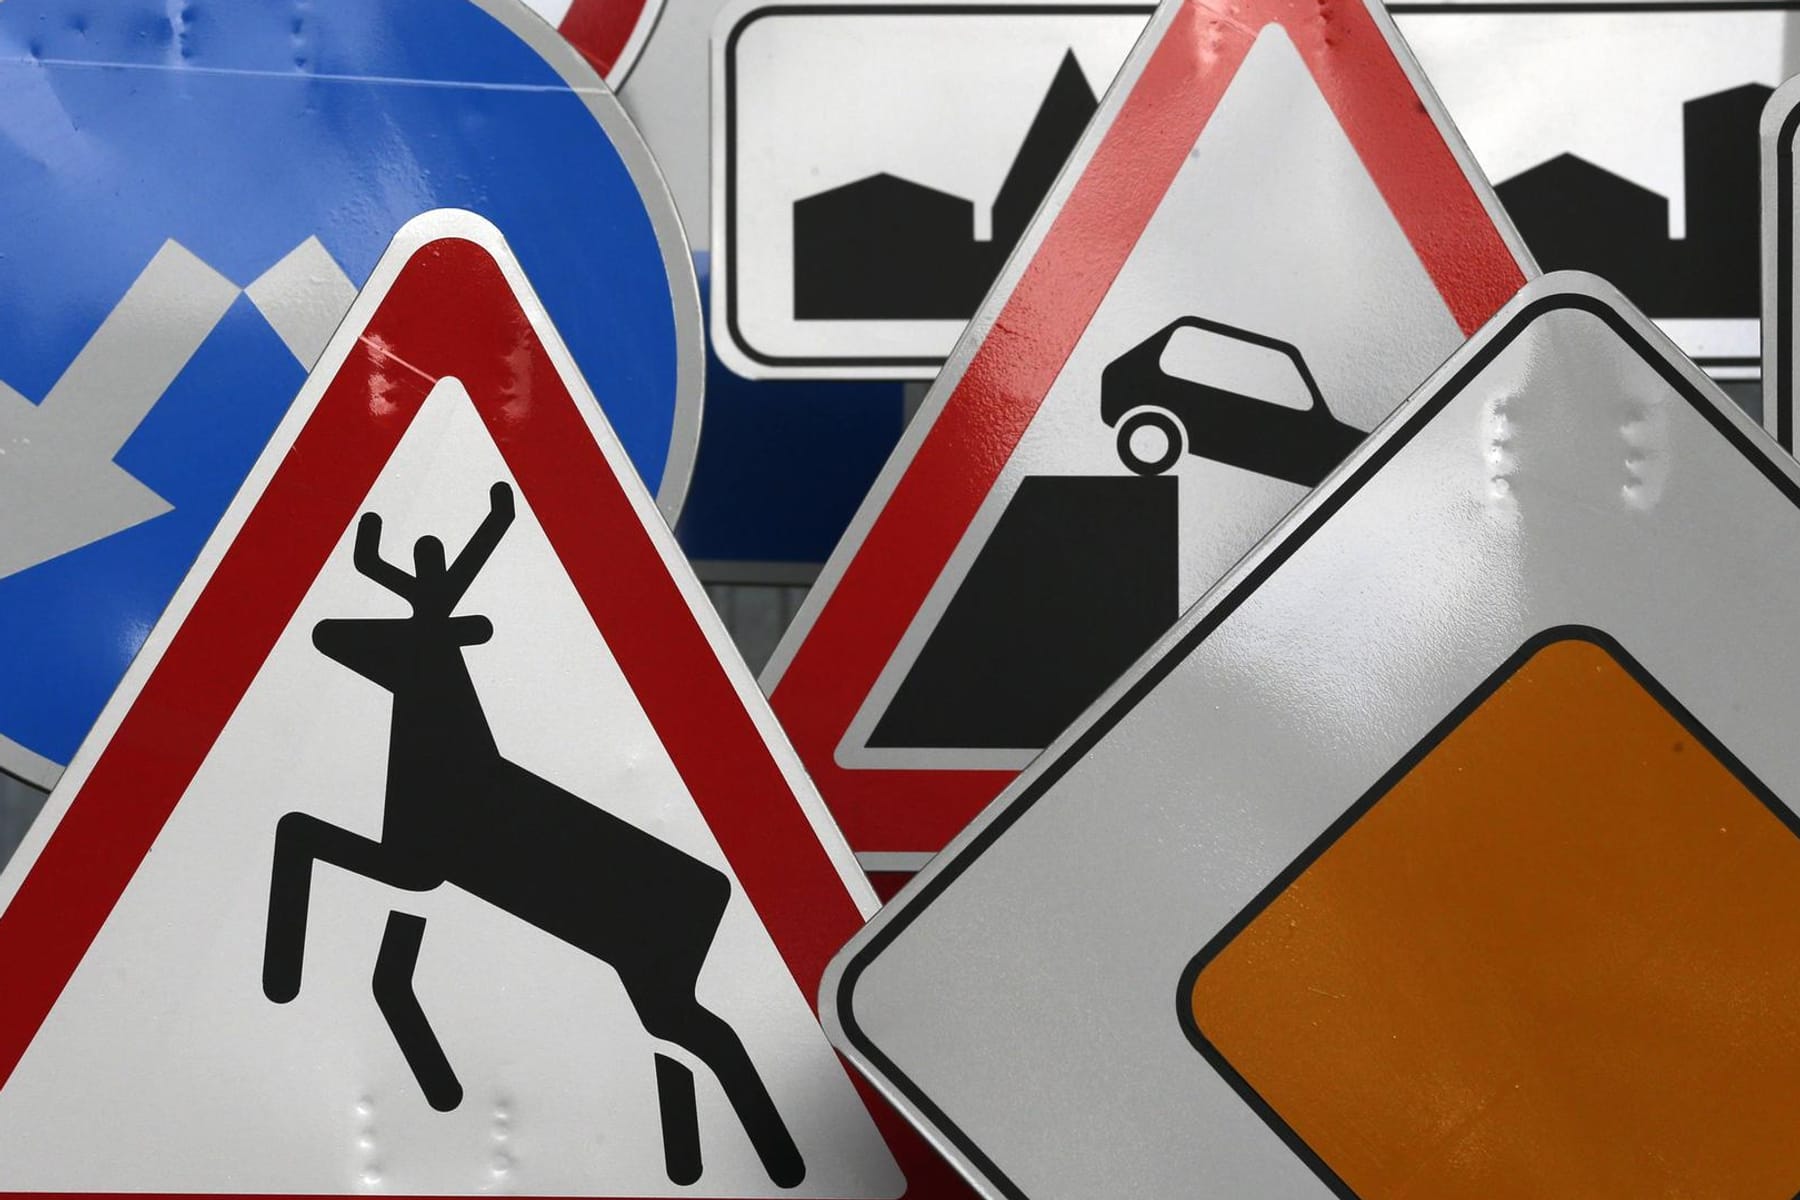 Umleitung A 1 in Reinfeld: Punkte auf Verkehrsschildern zeigen